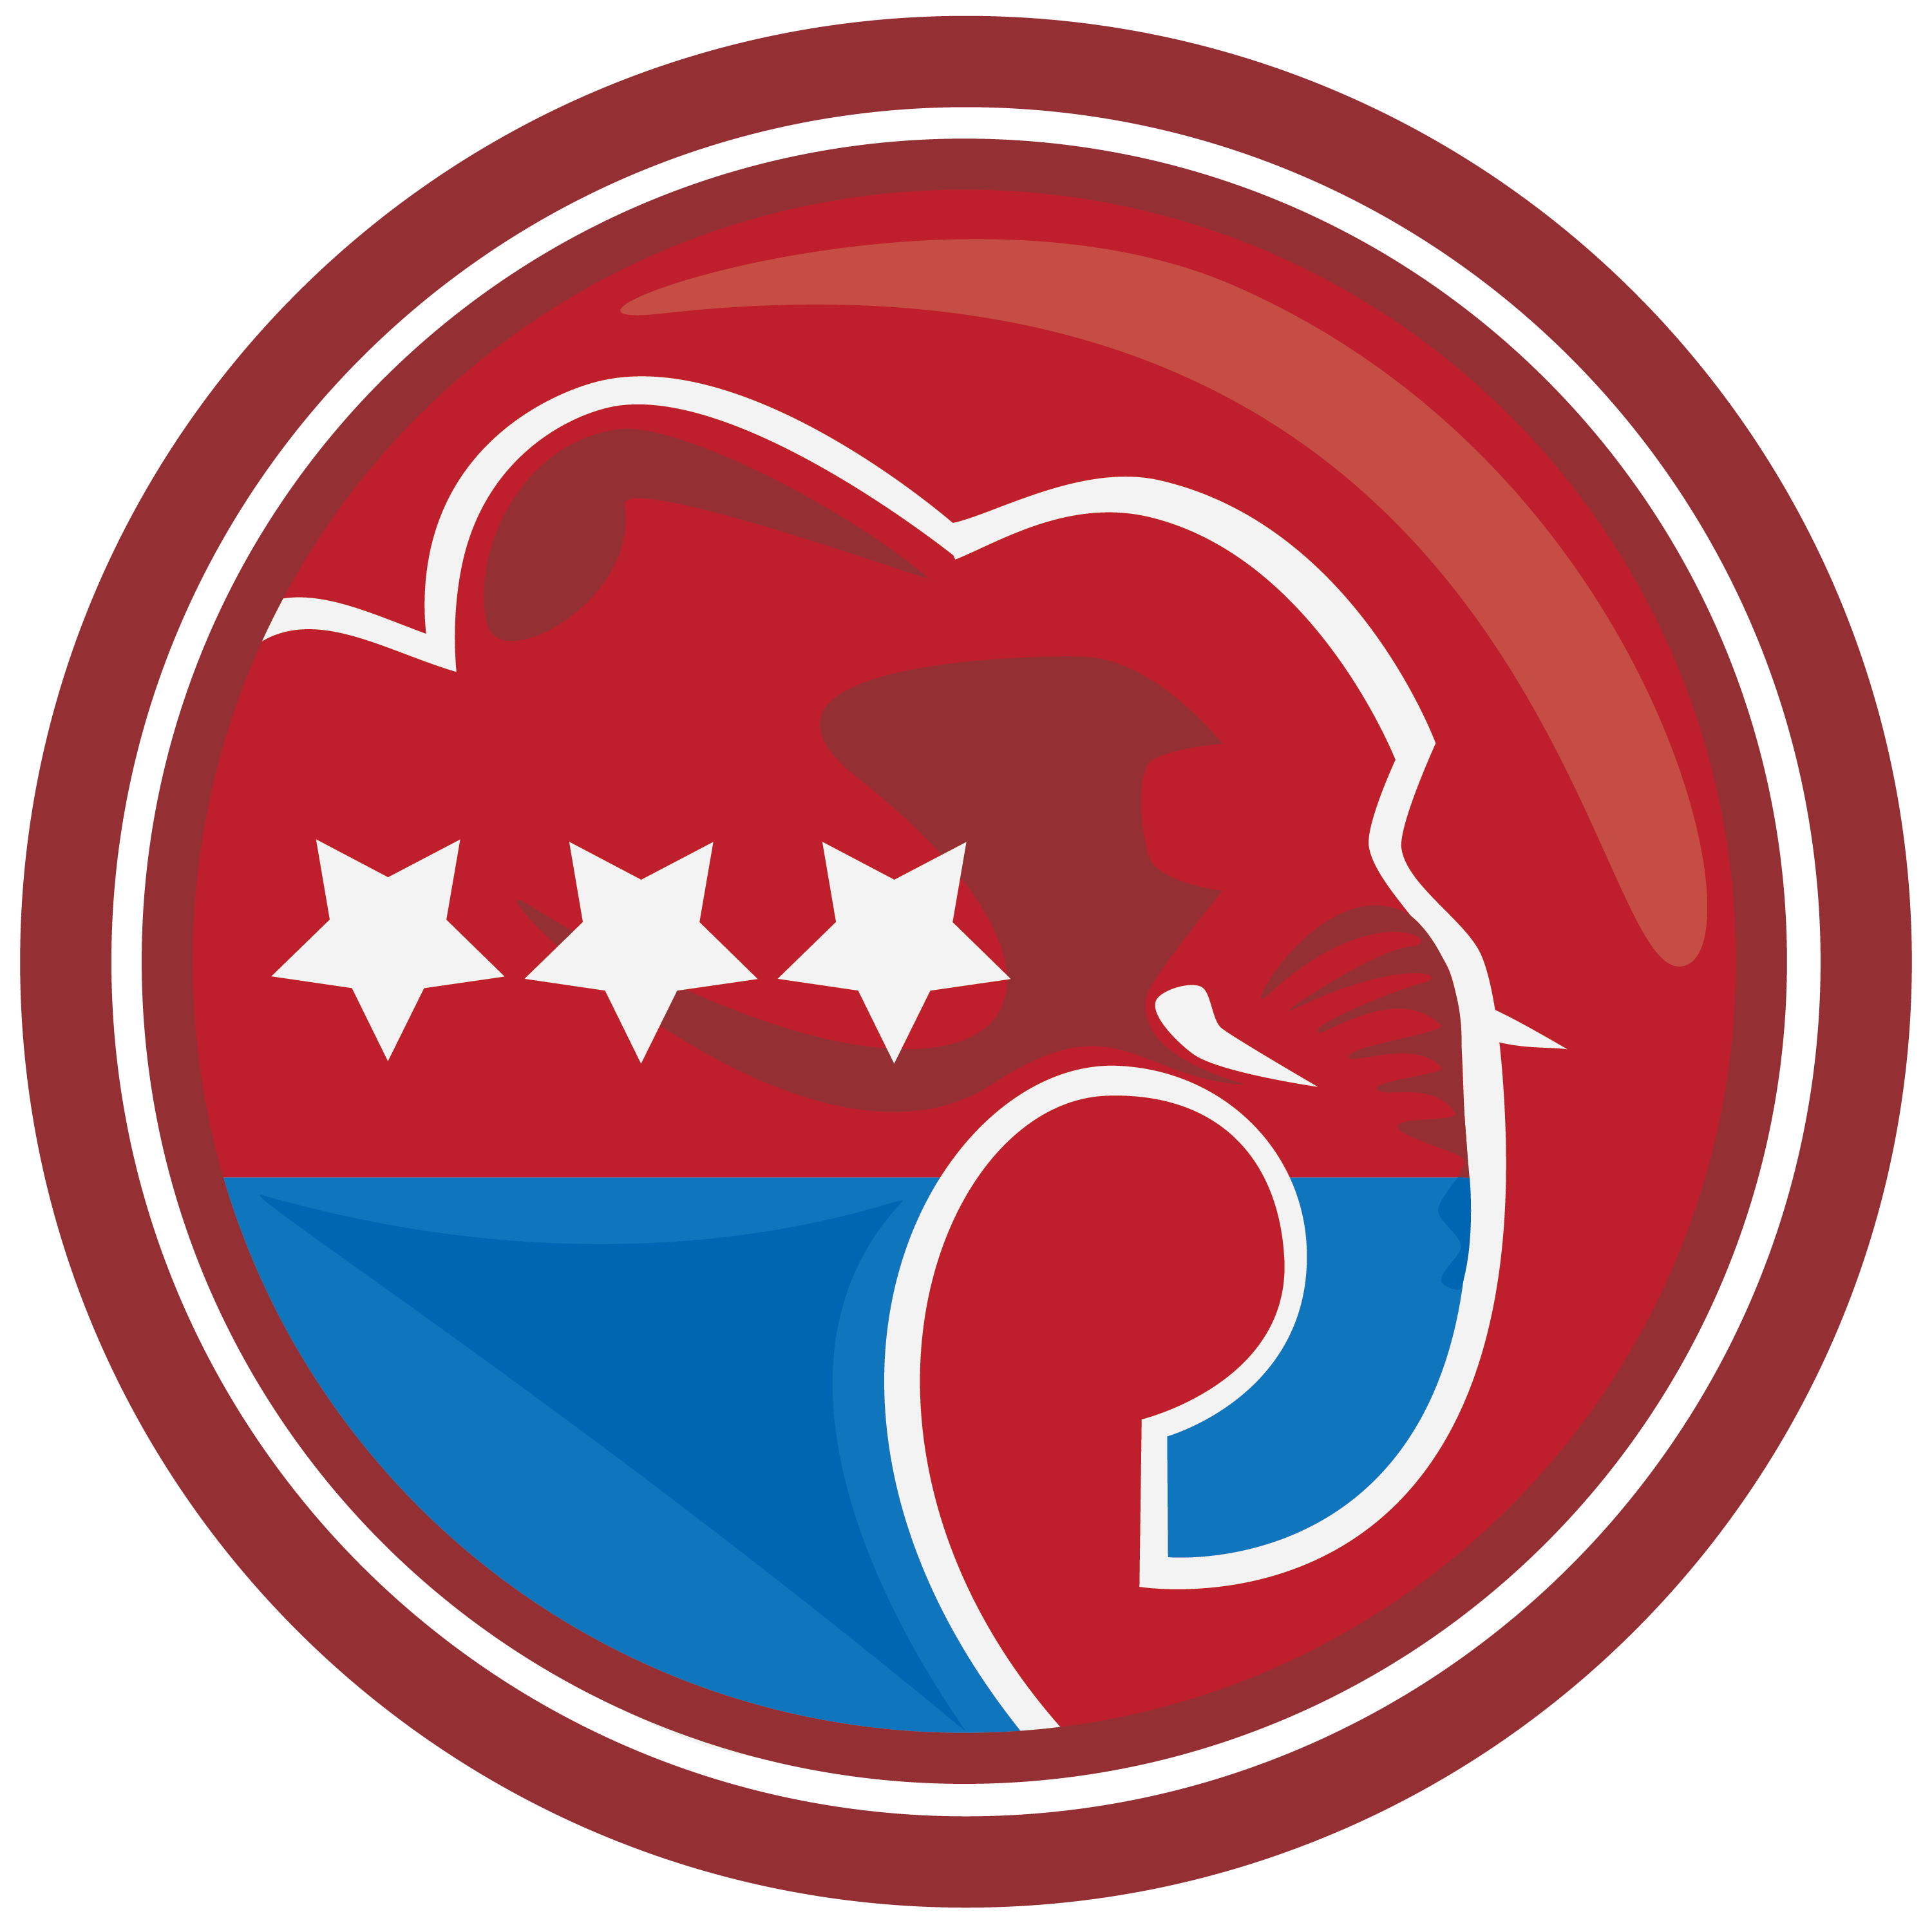 Republican Party Elephant - ClipArt Best